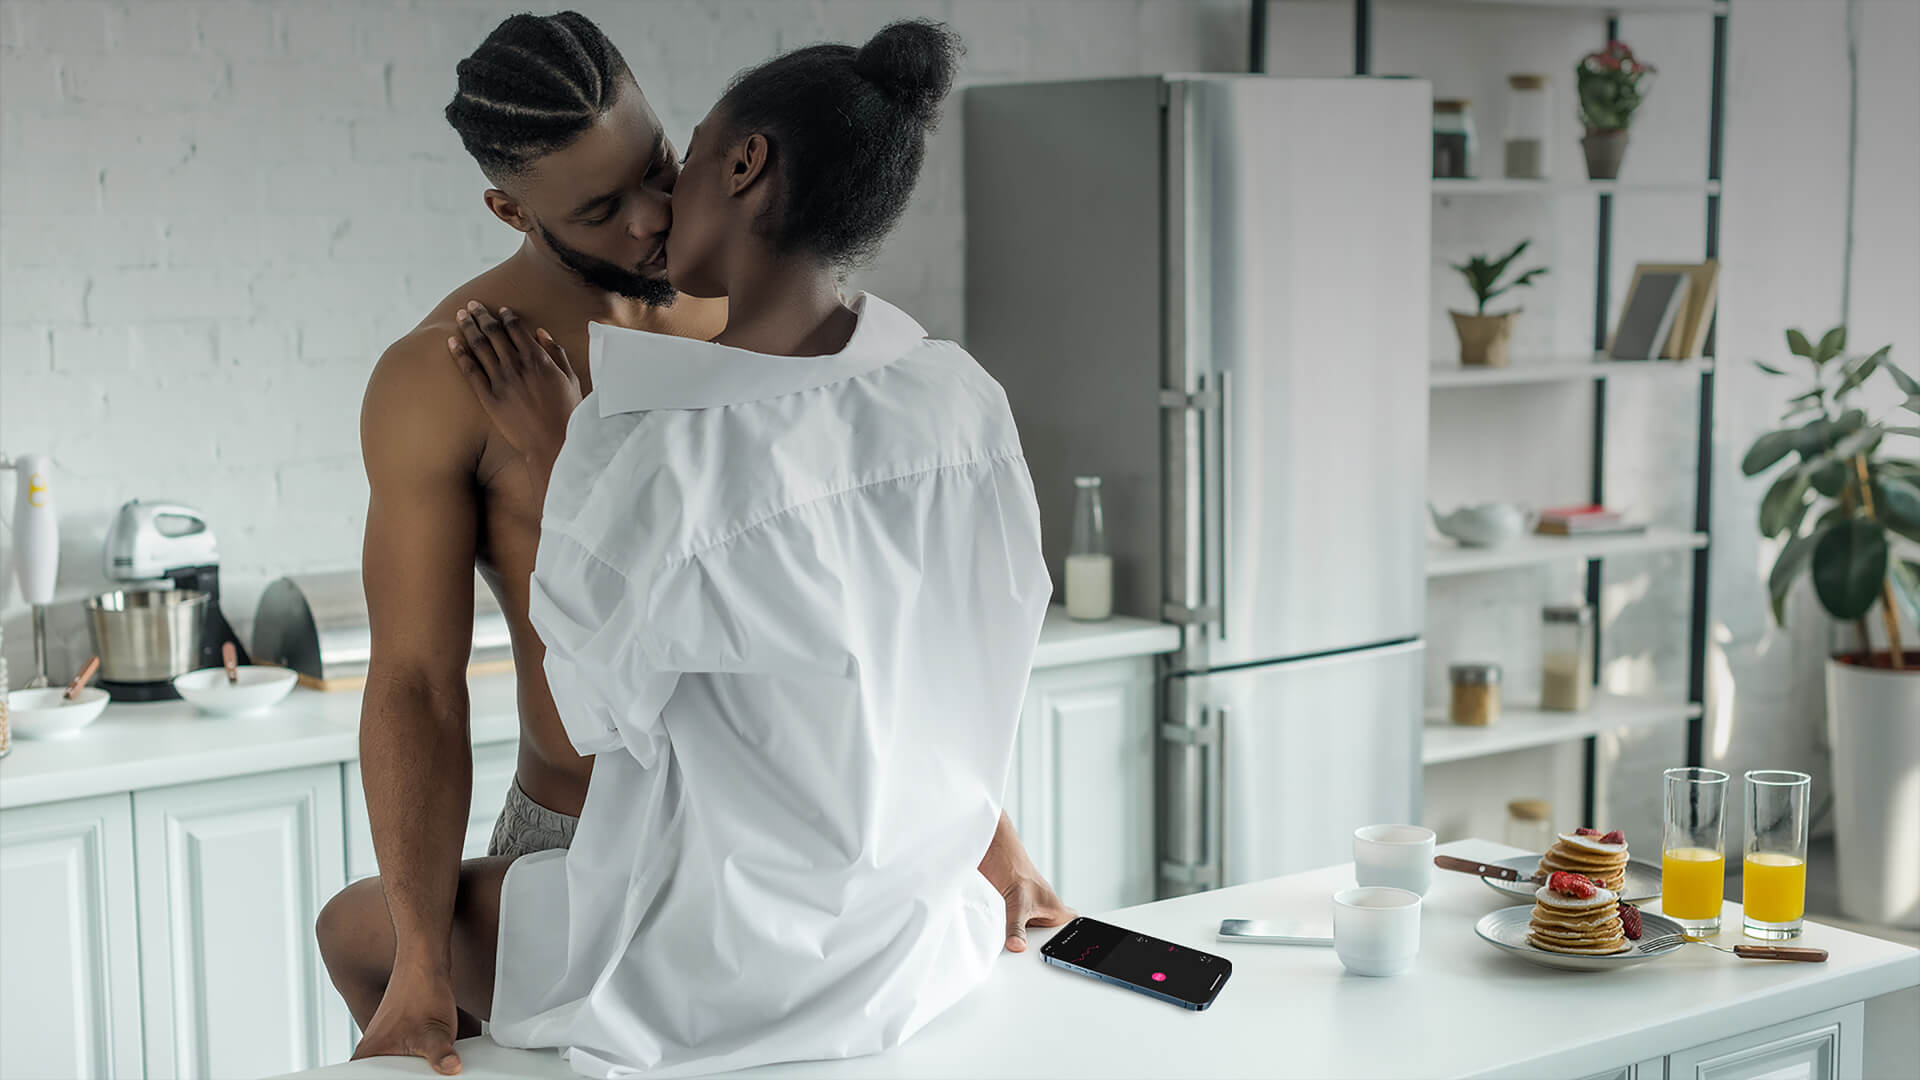 lovense ferri - прелюдия на кухне - голый мужчина целуется с женщиной в белой рубашке, а его левая рука контролирует ее ferri в приложении lovense remote